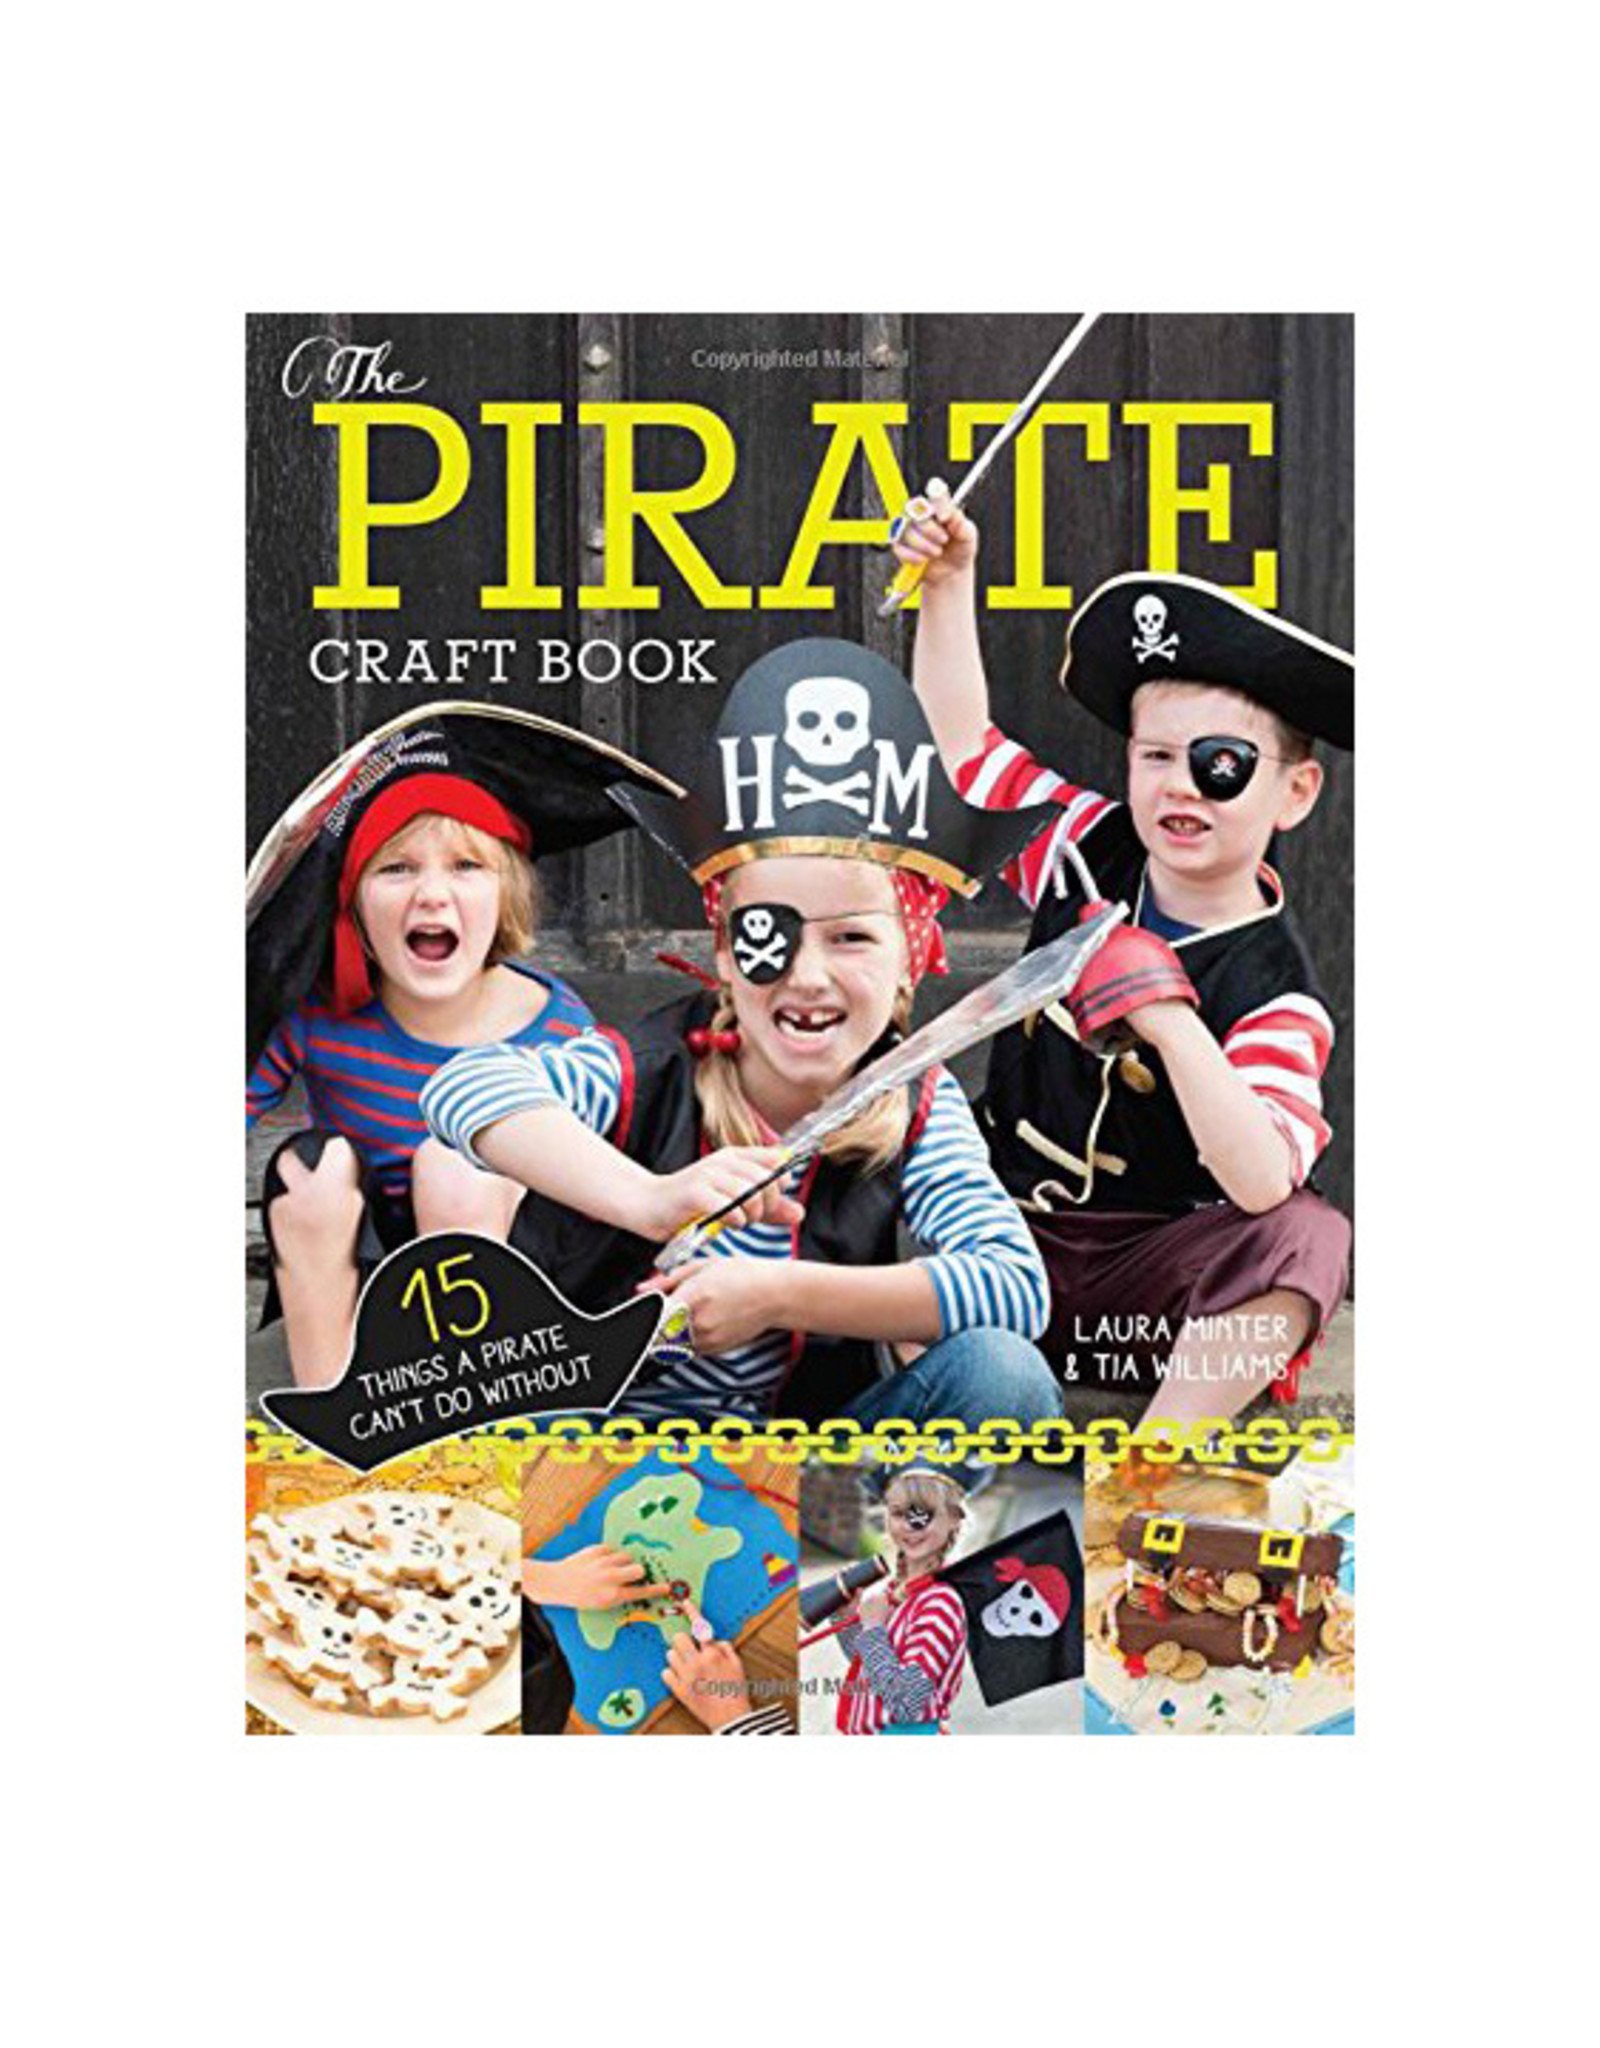 The Pirate Craft Book